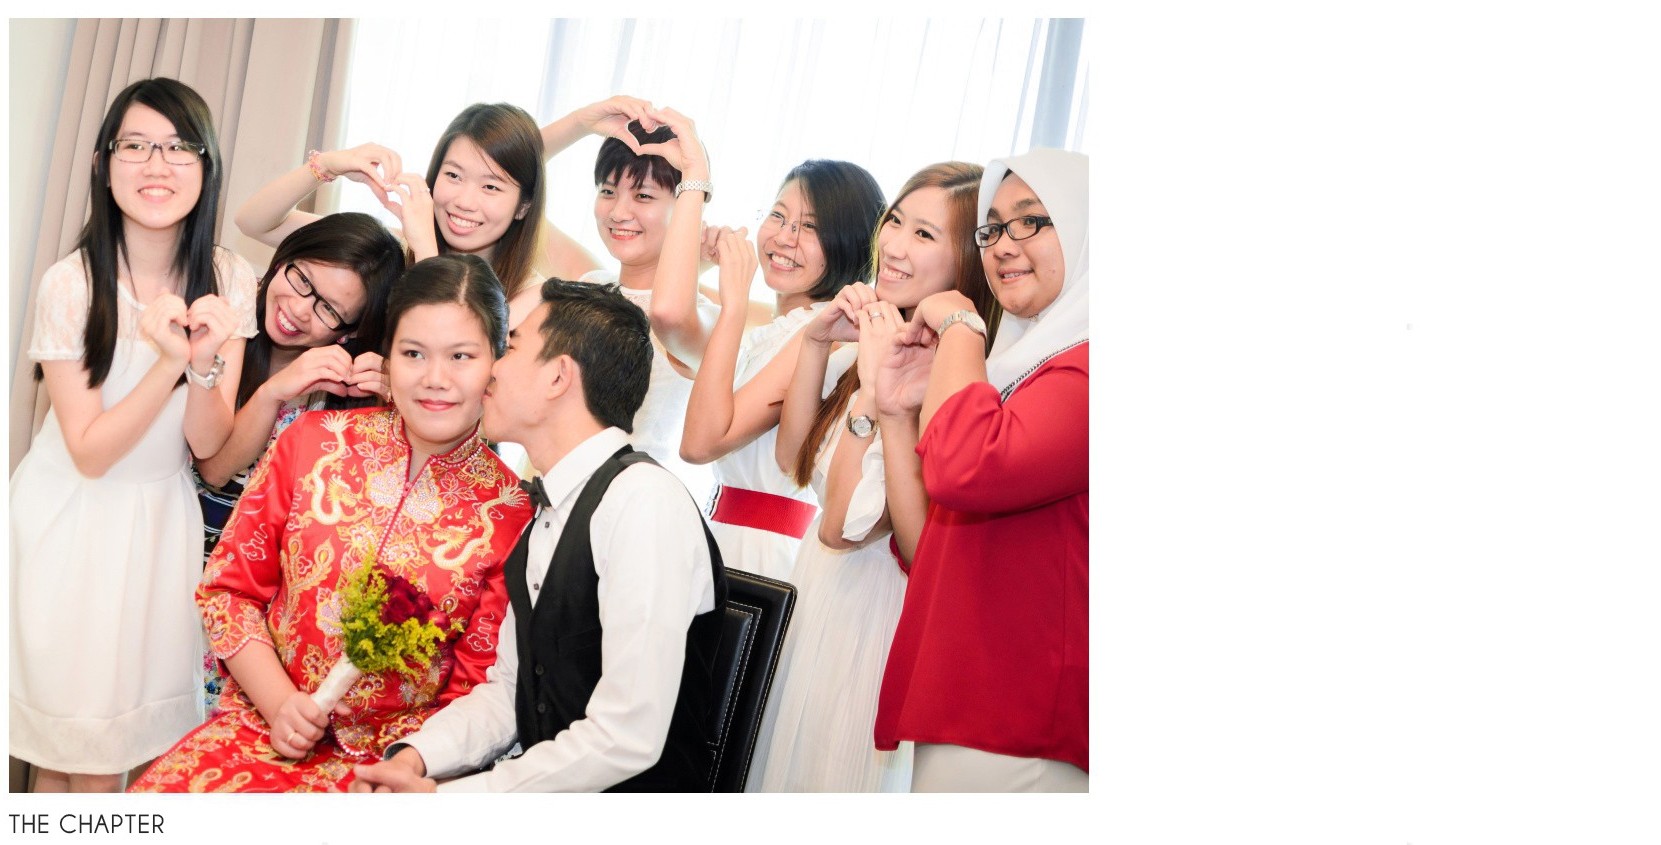 wedding photographer malaysia, ipoh wedding photographer